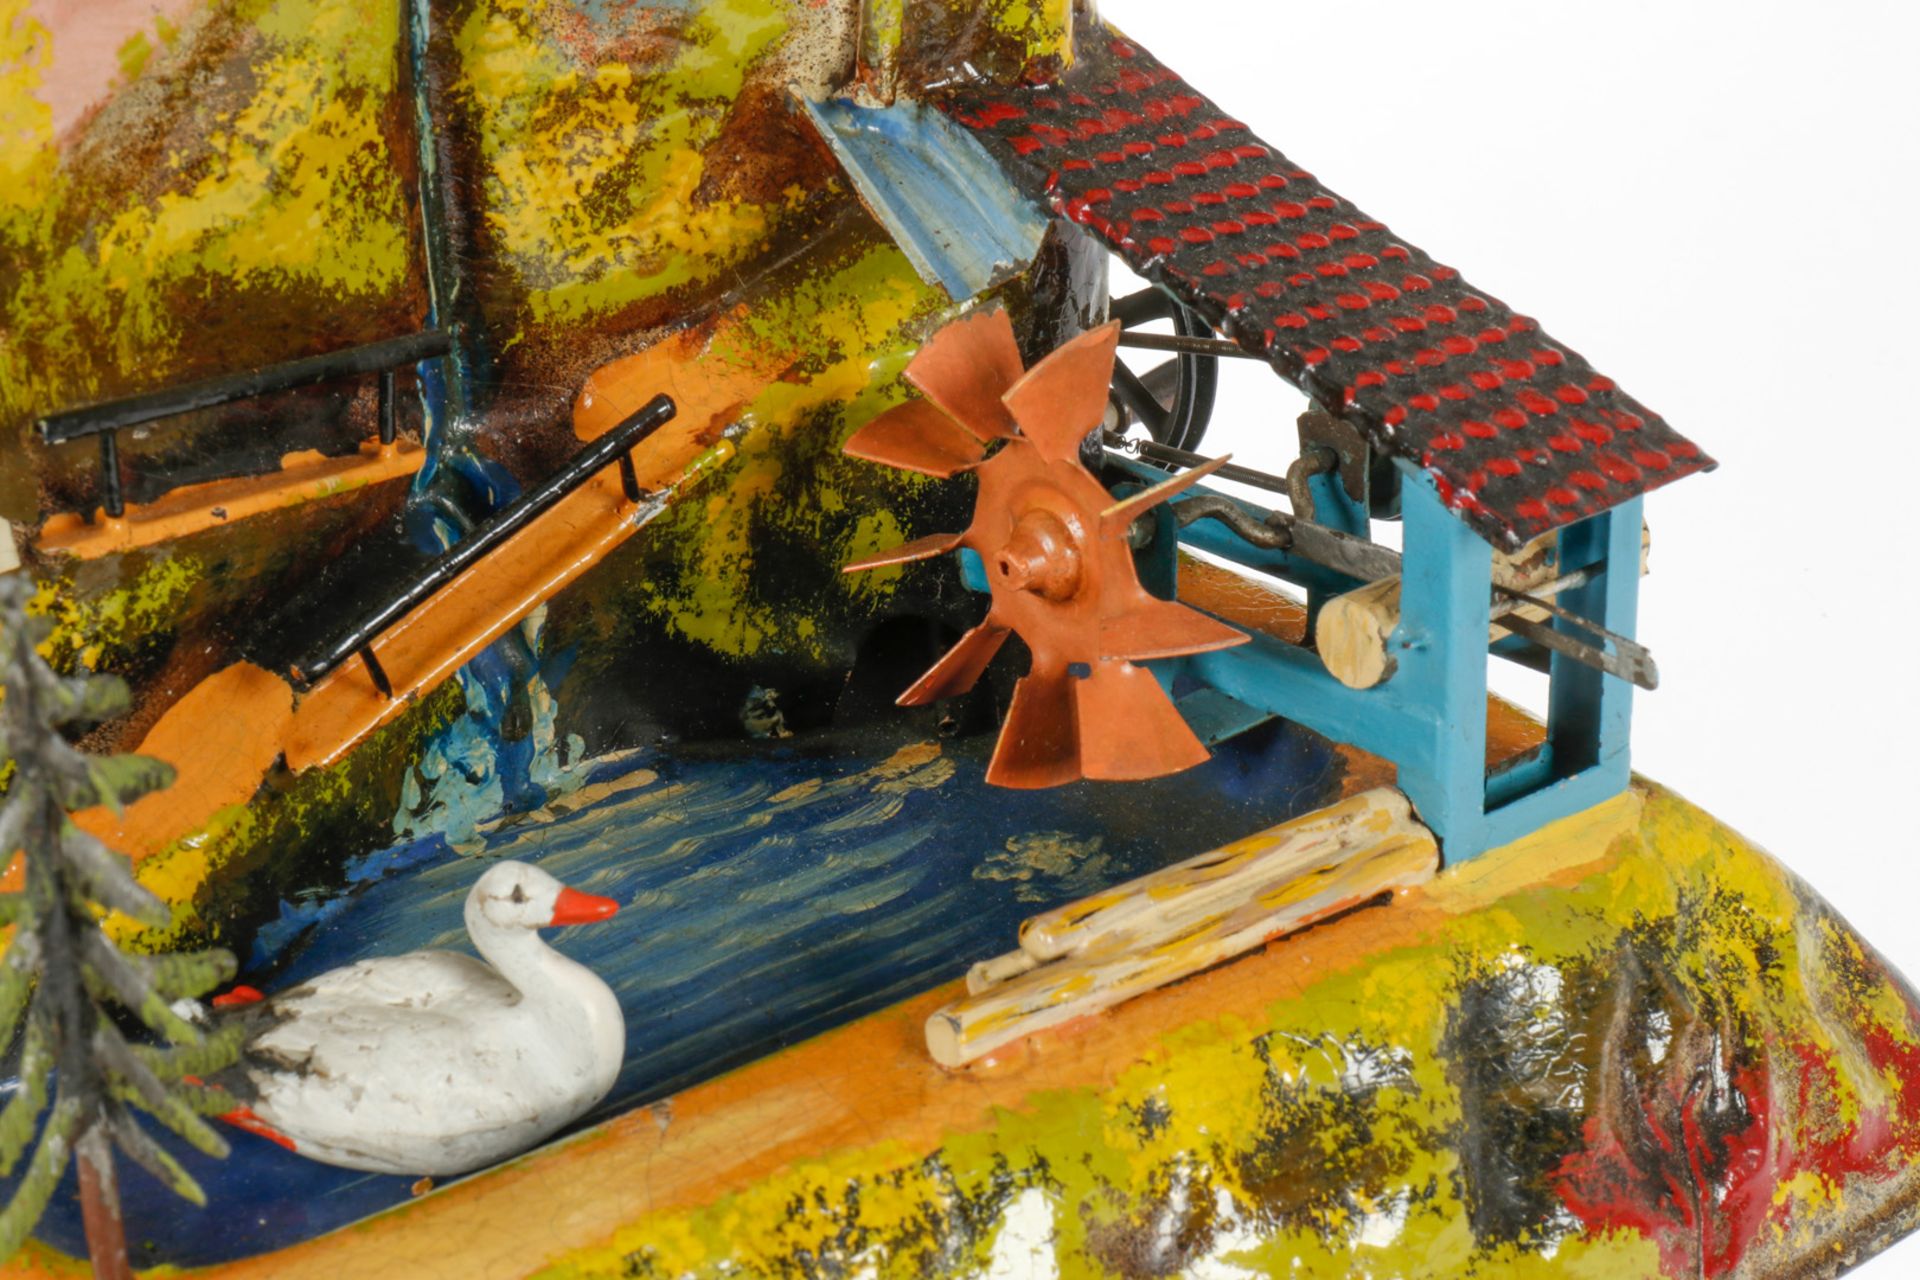 Bing Antriebsmodell Bergdiorama, mit Wasserrad, Baumstammsäge, See und Ente, uralt, HL, L 27, - Image 2 of 3